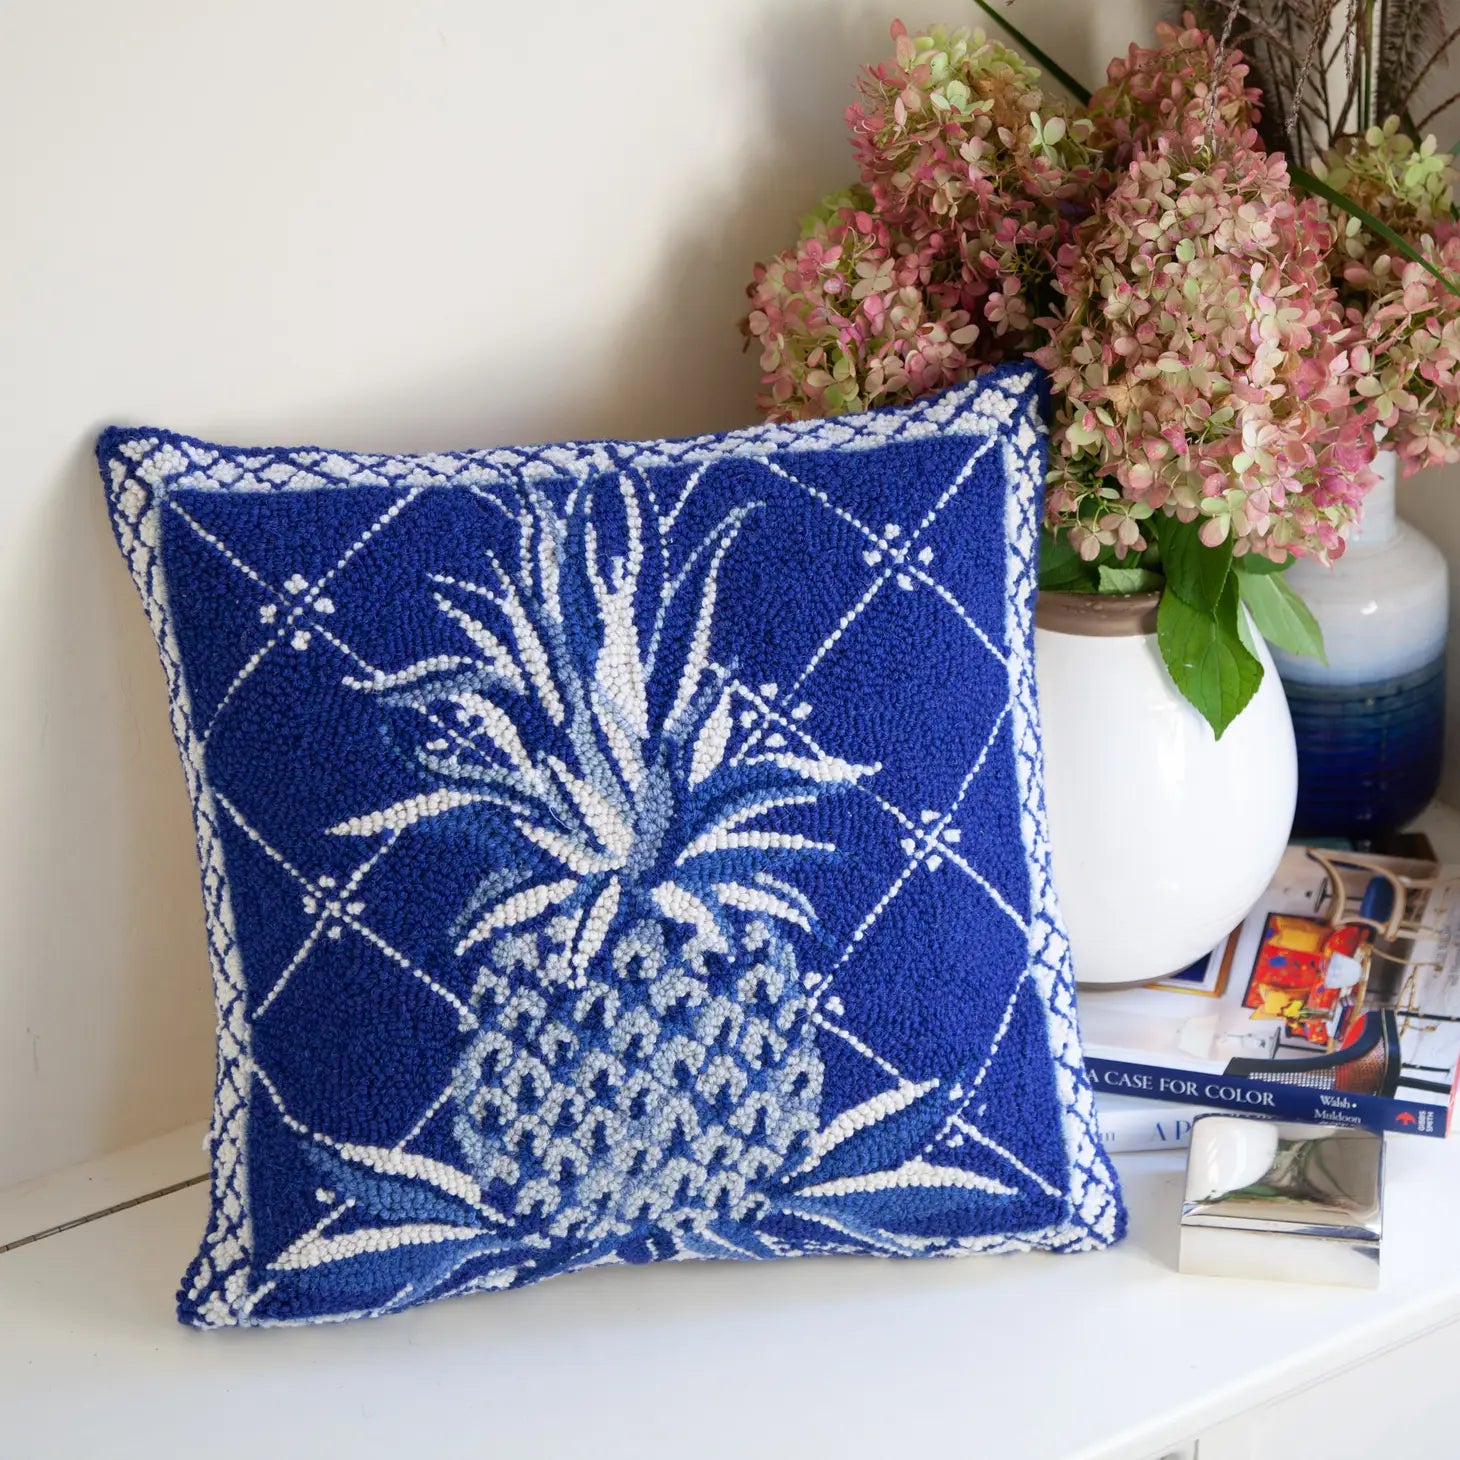 Blue Pineapple Hook Pillow